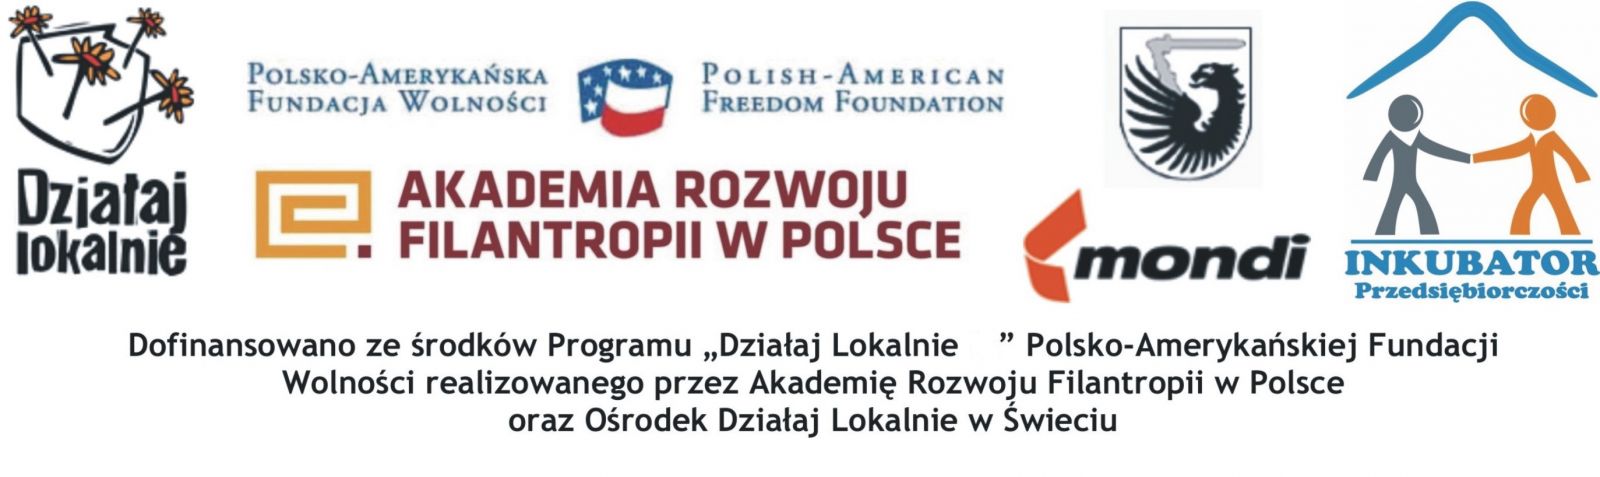 Logo Działaj Lokalnie, Akademii Rozwoju Filantropii w Polsce, Mondi oraz Inkybatora Przedsiębiorczości w Świeciu.